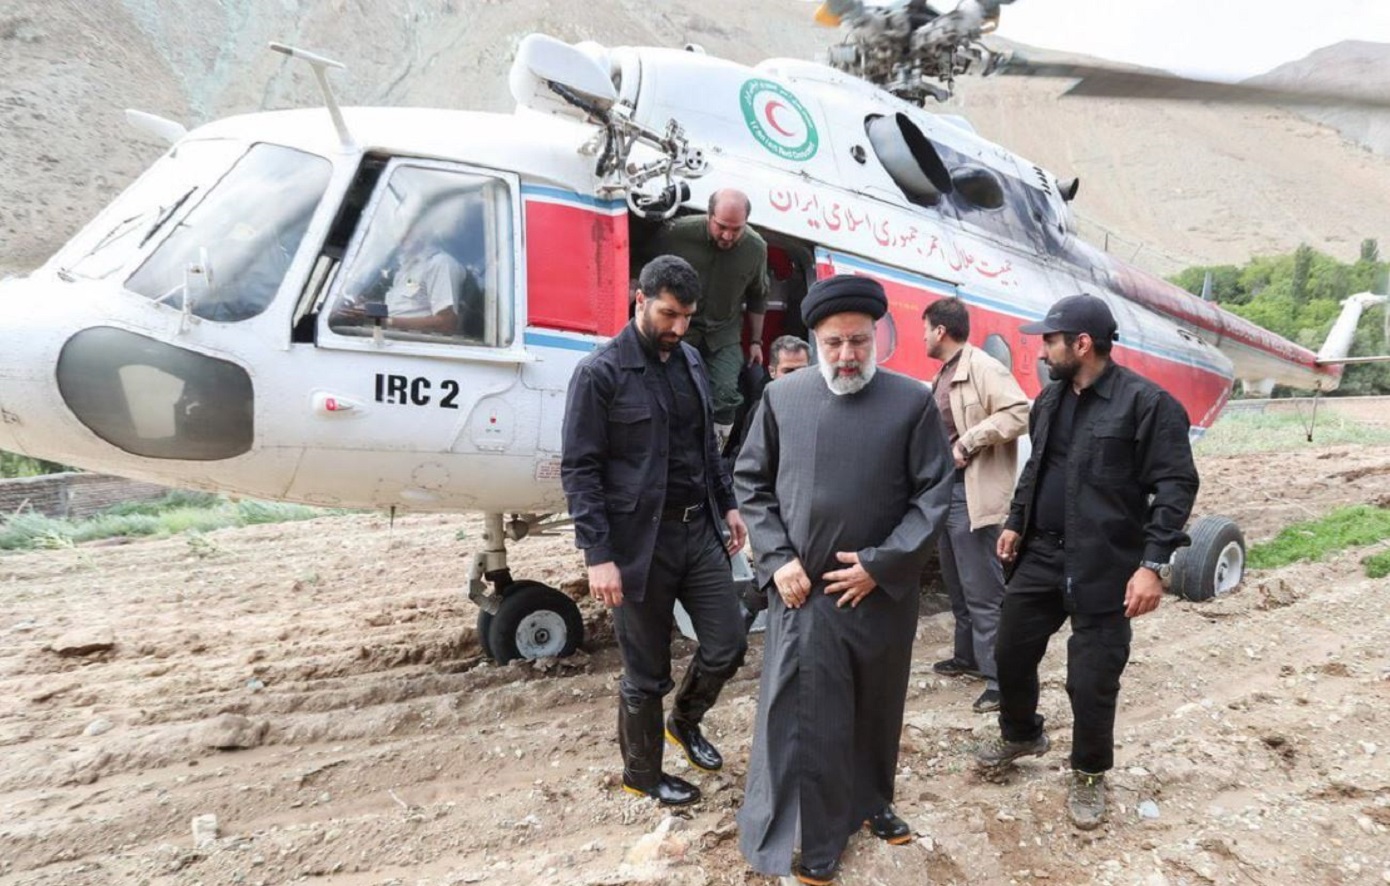 Θρίλερ με το ελικόπτερο του Ιρανού προέδρου  Ραϊσί: Σε εξέλιξη οι έρευνες διάσωσης κάτω από πολύ δύσκολες καιρικές συνθήκες